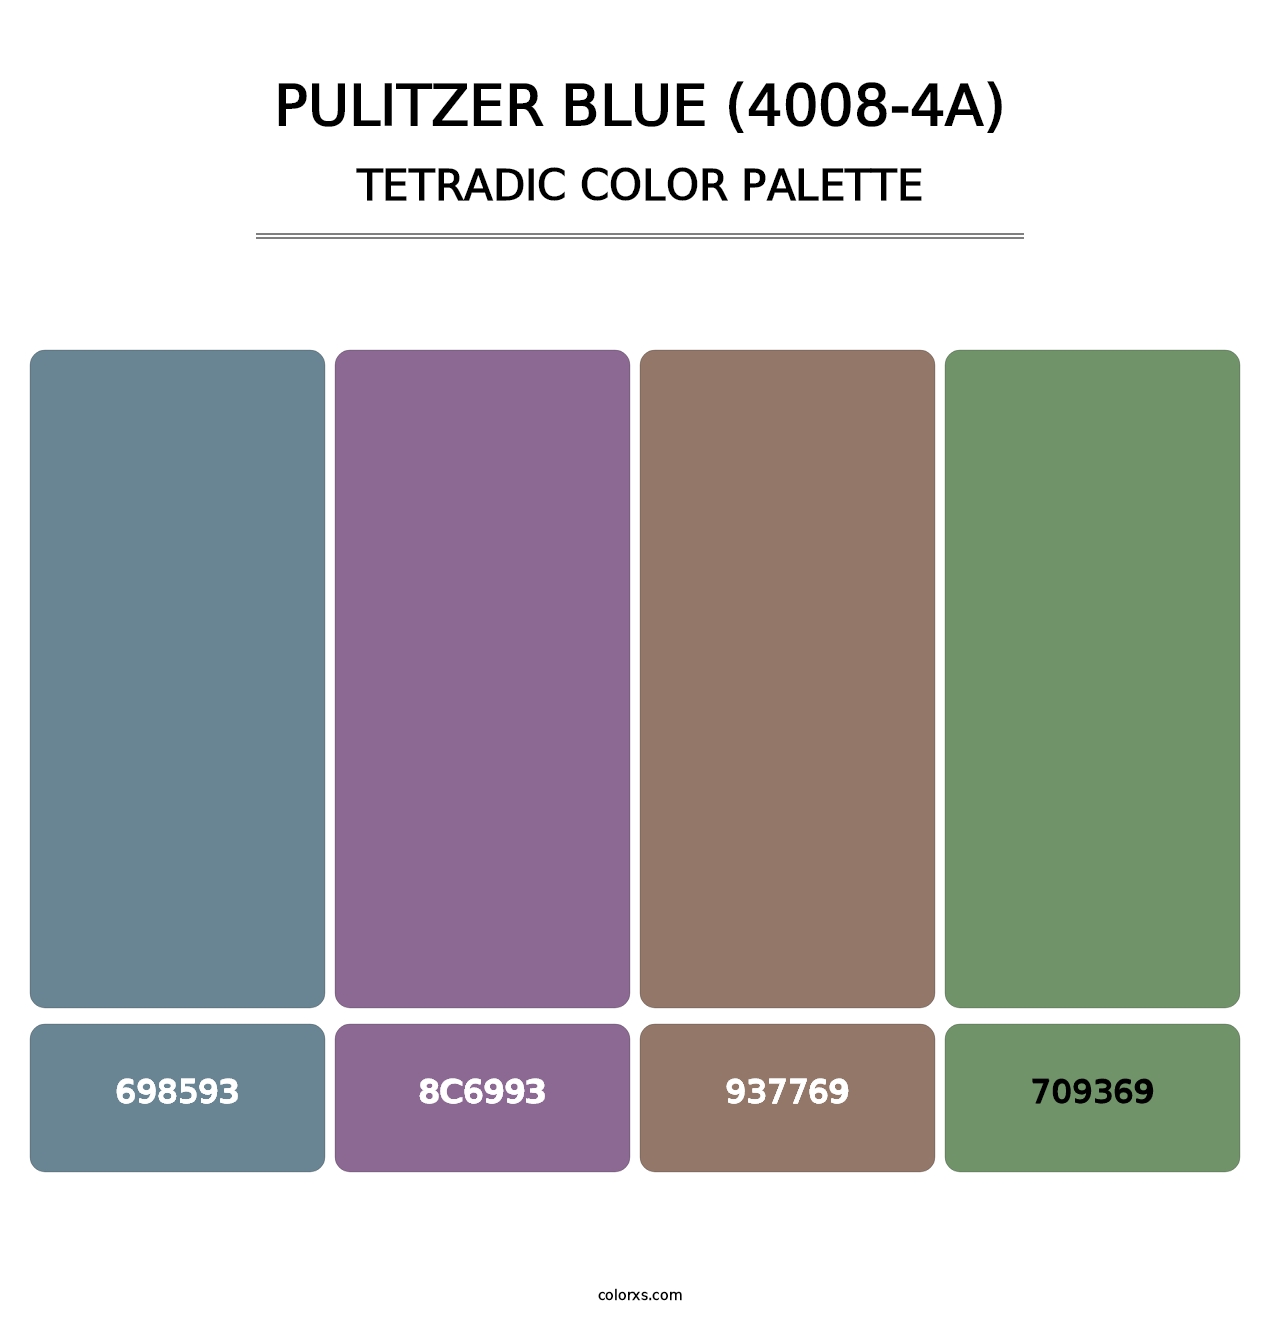 Pulitzer Blue (4008-4A) - Tetradic Color Palette